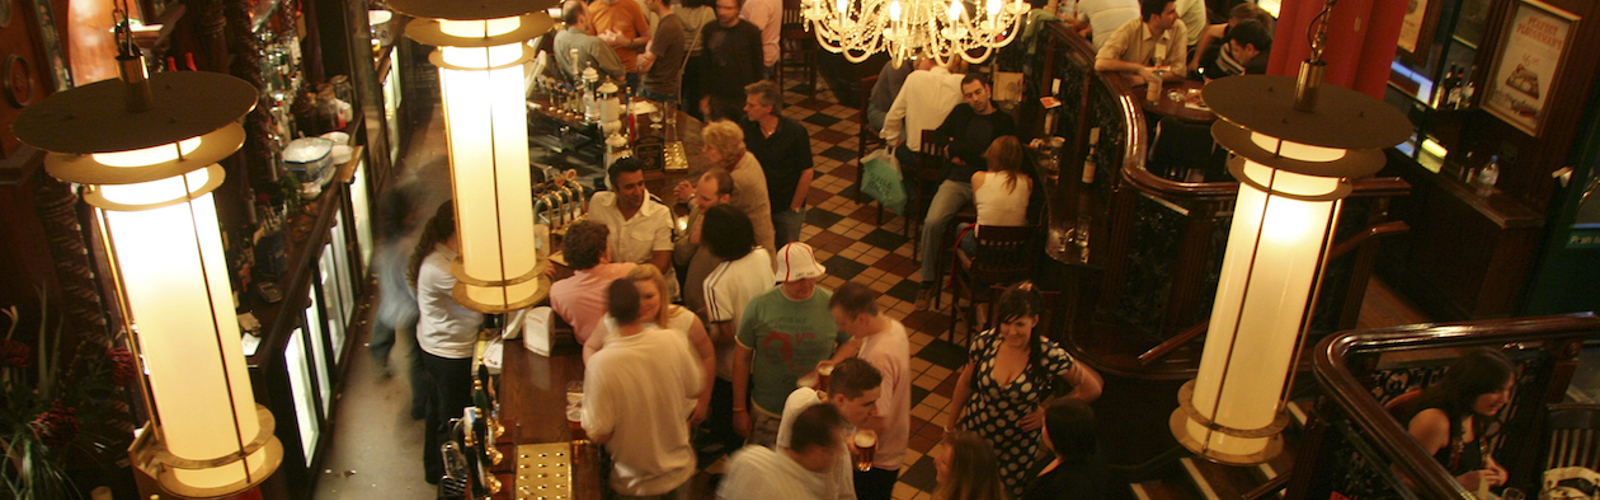 A crowded bar